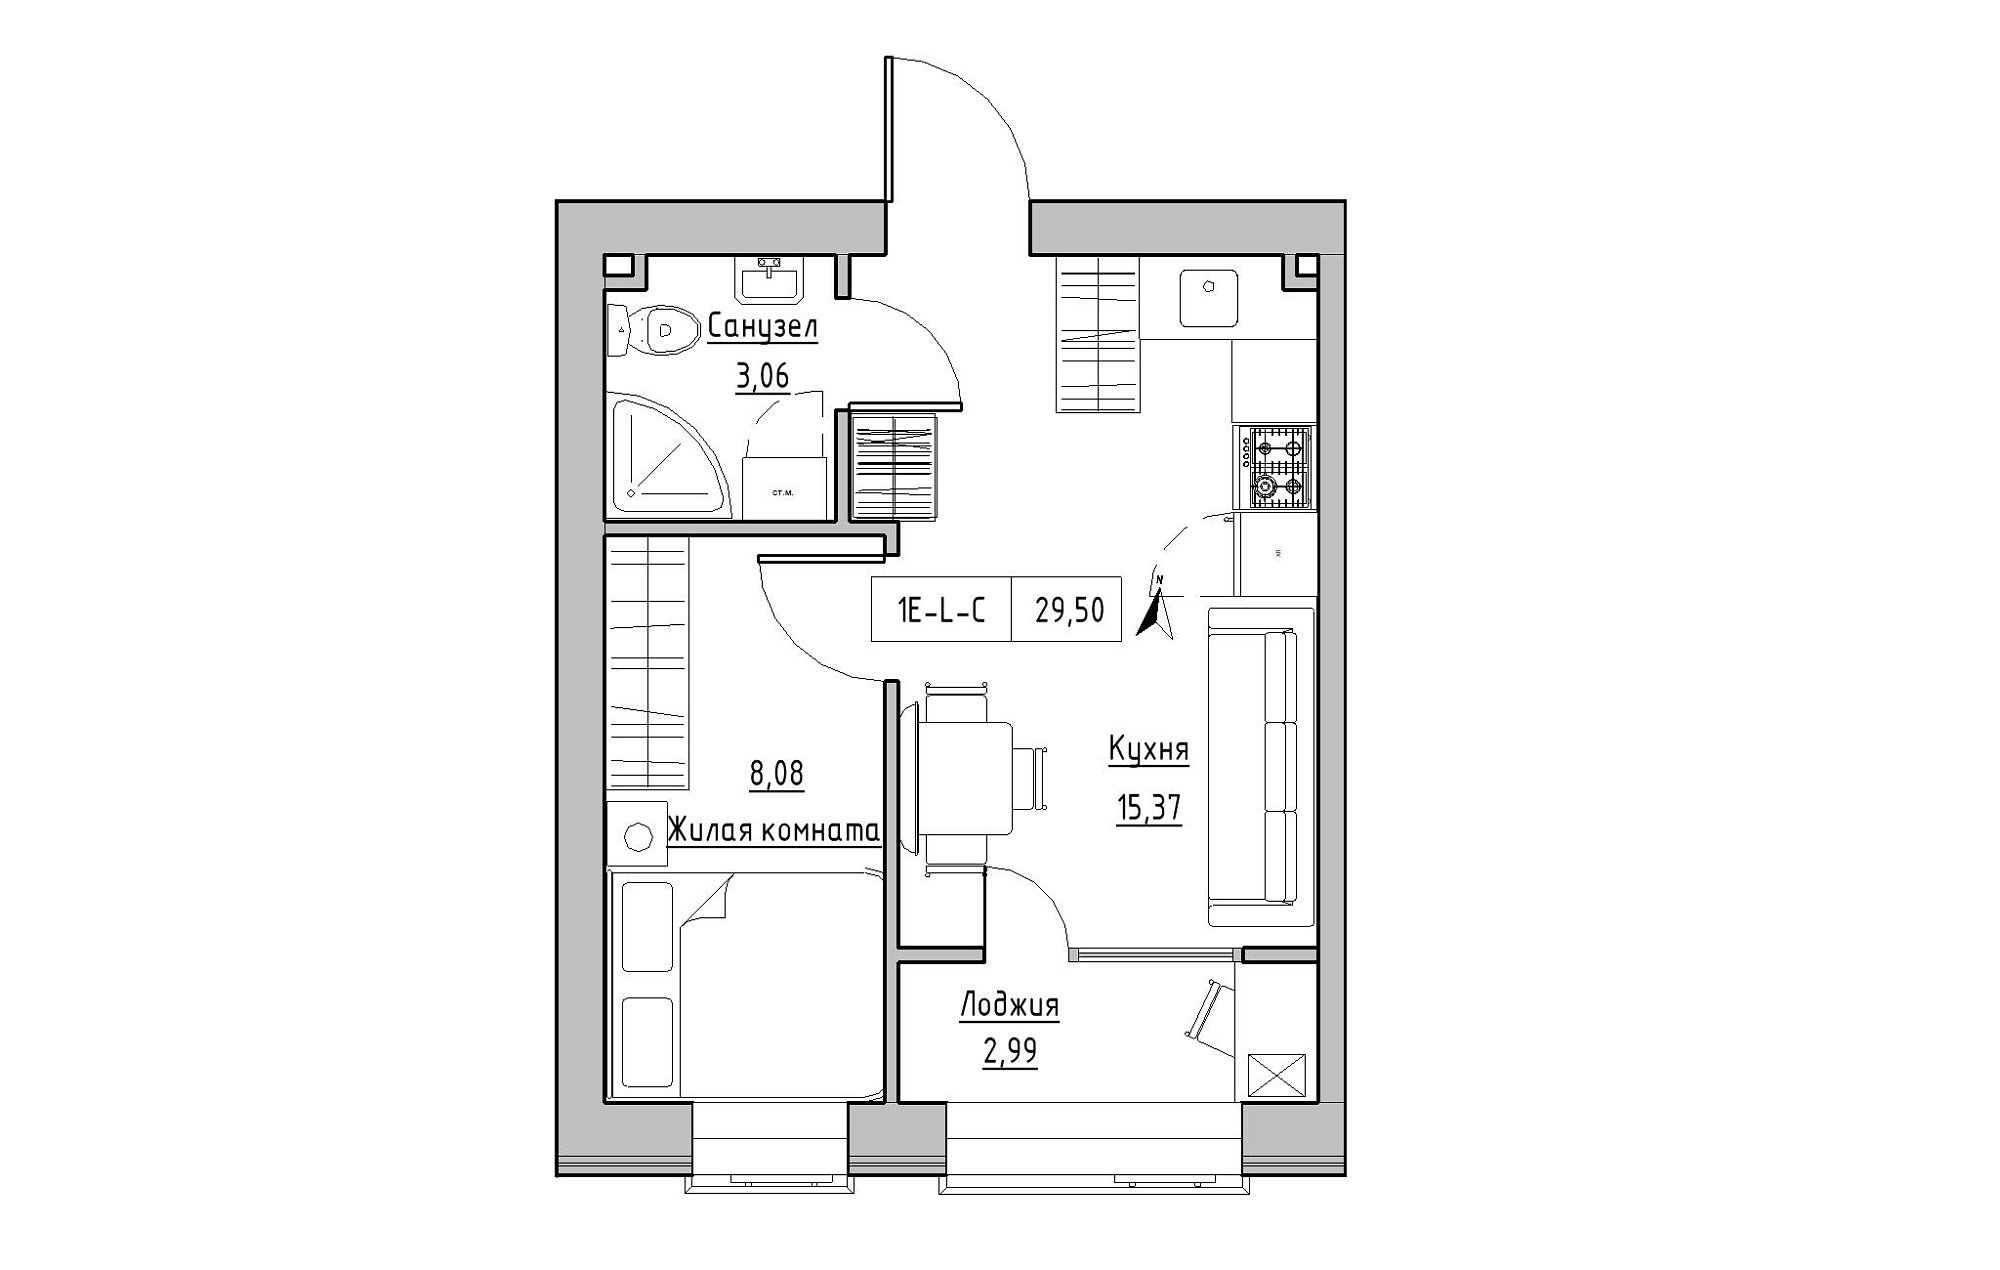 Планування 1-к квартира площею 29.5м2, KS-019-04/0010.